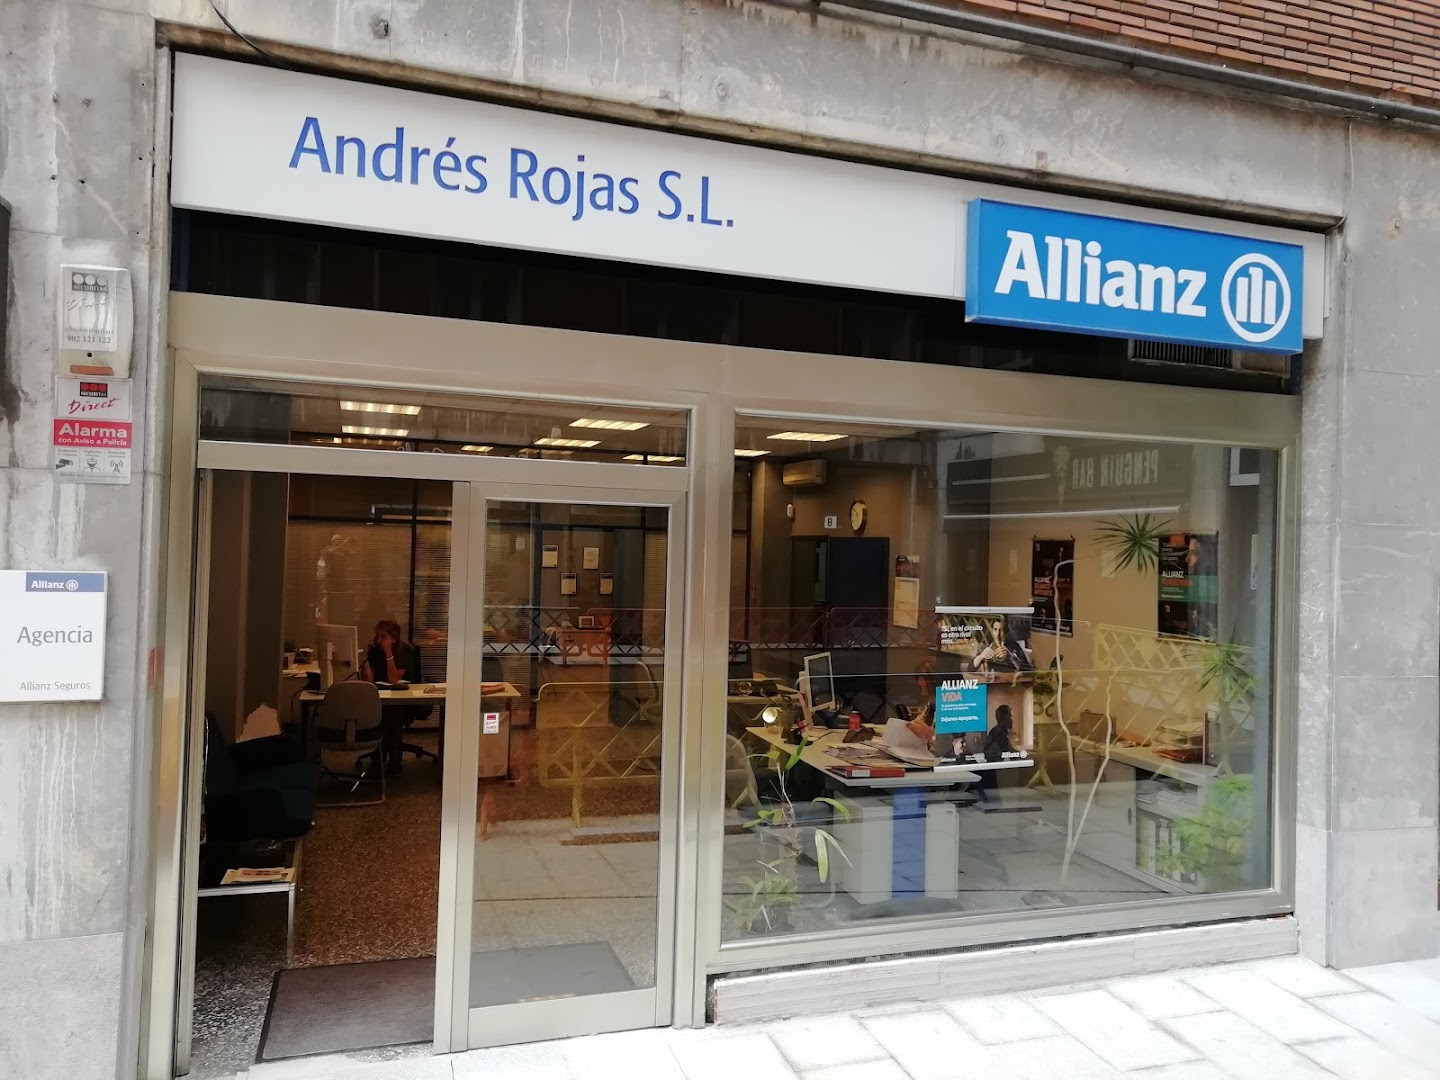 Allianz Bilbao-Agencia de Seguros Andrés Rojas S.L